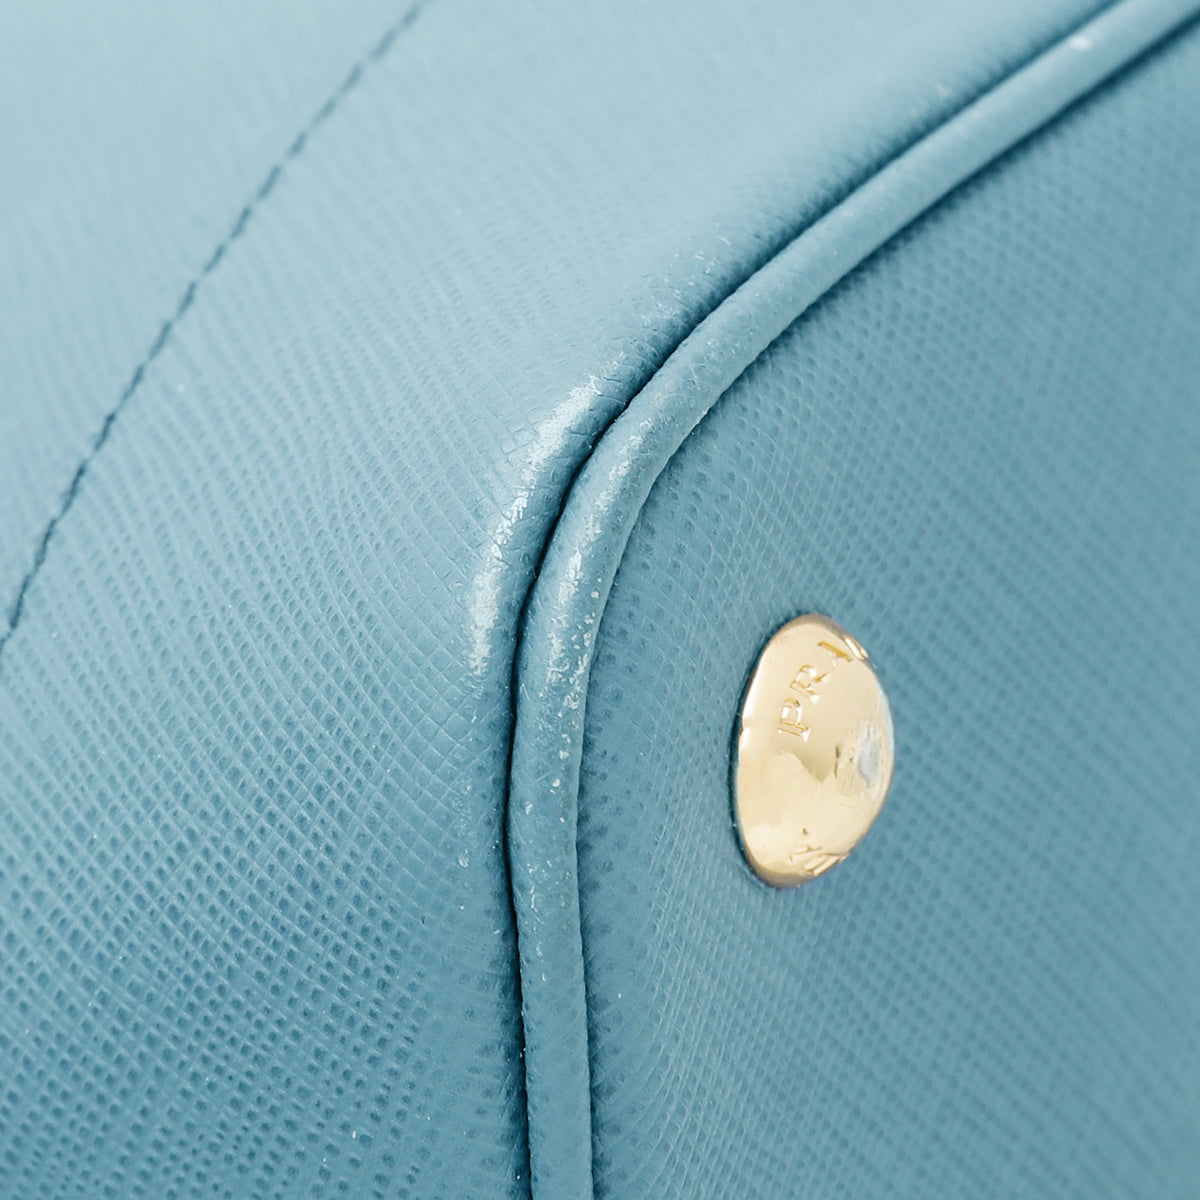 Prada Turquoise Promenade Medium Bag